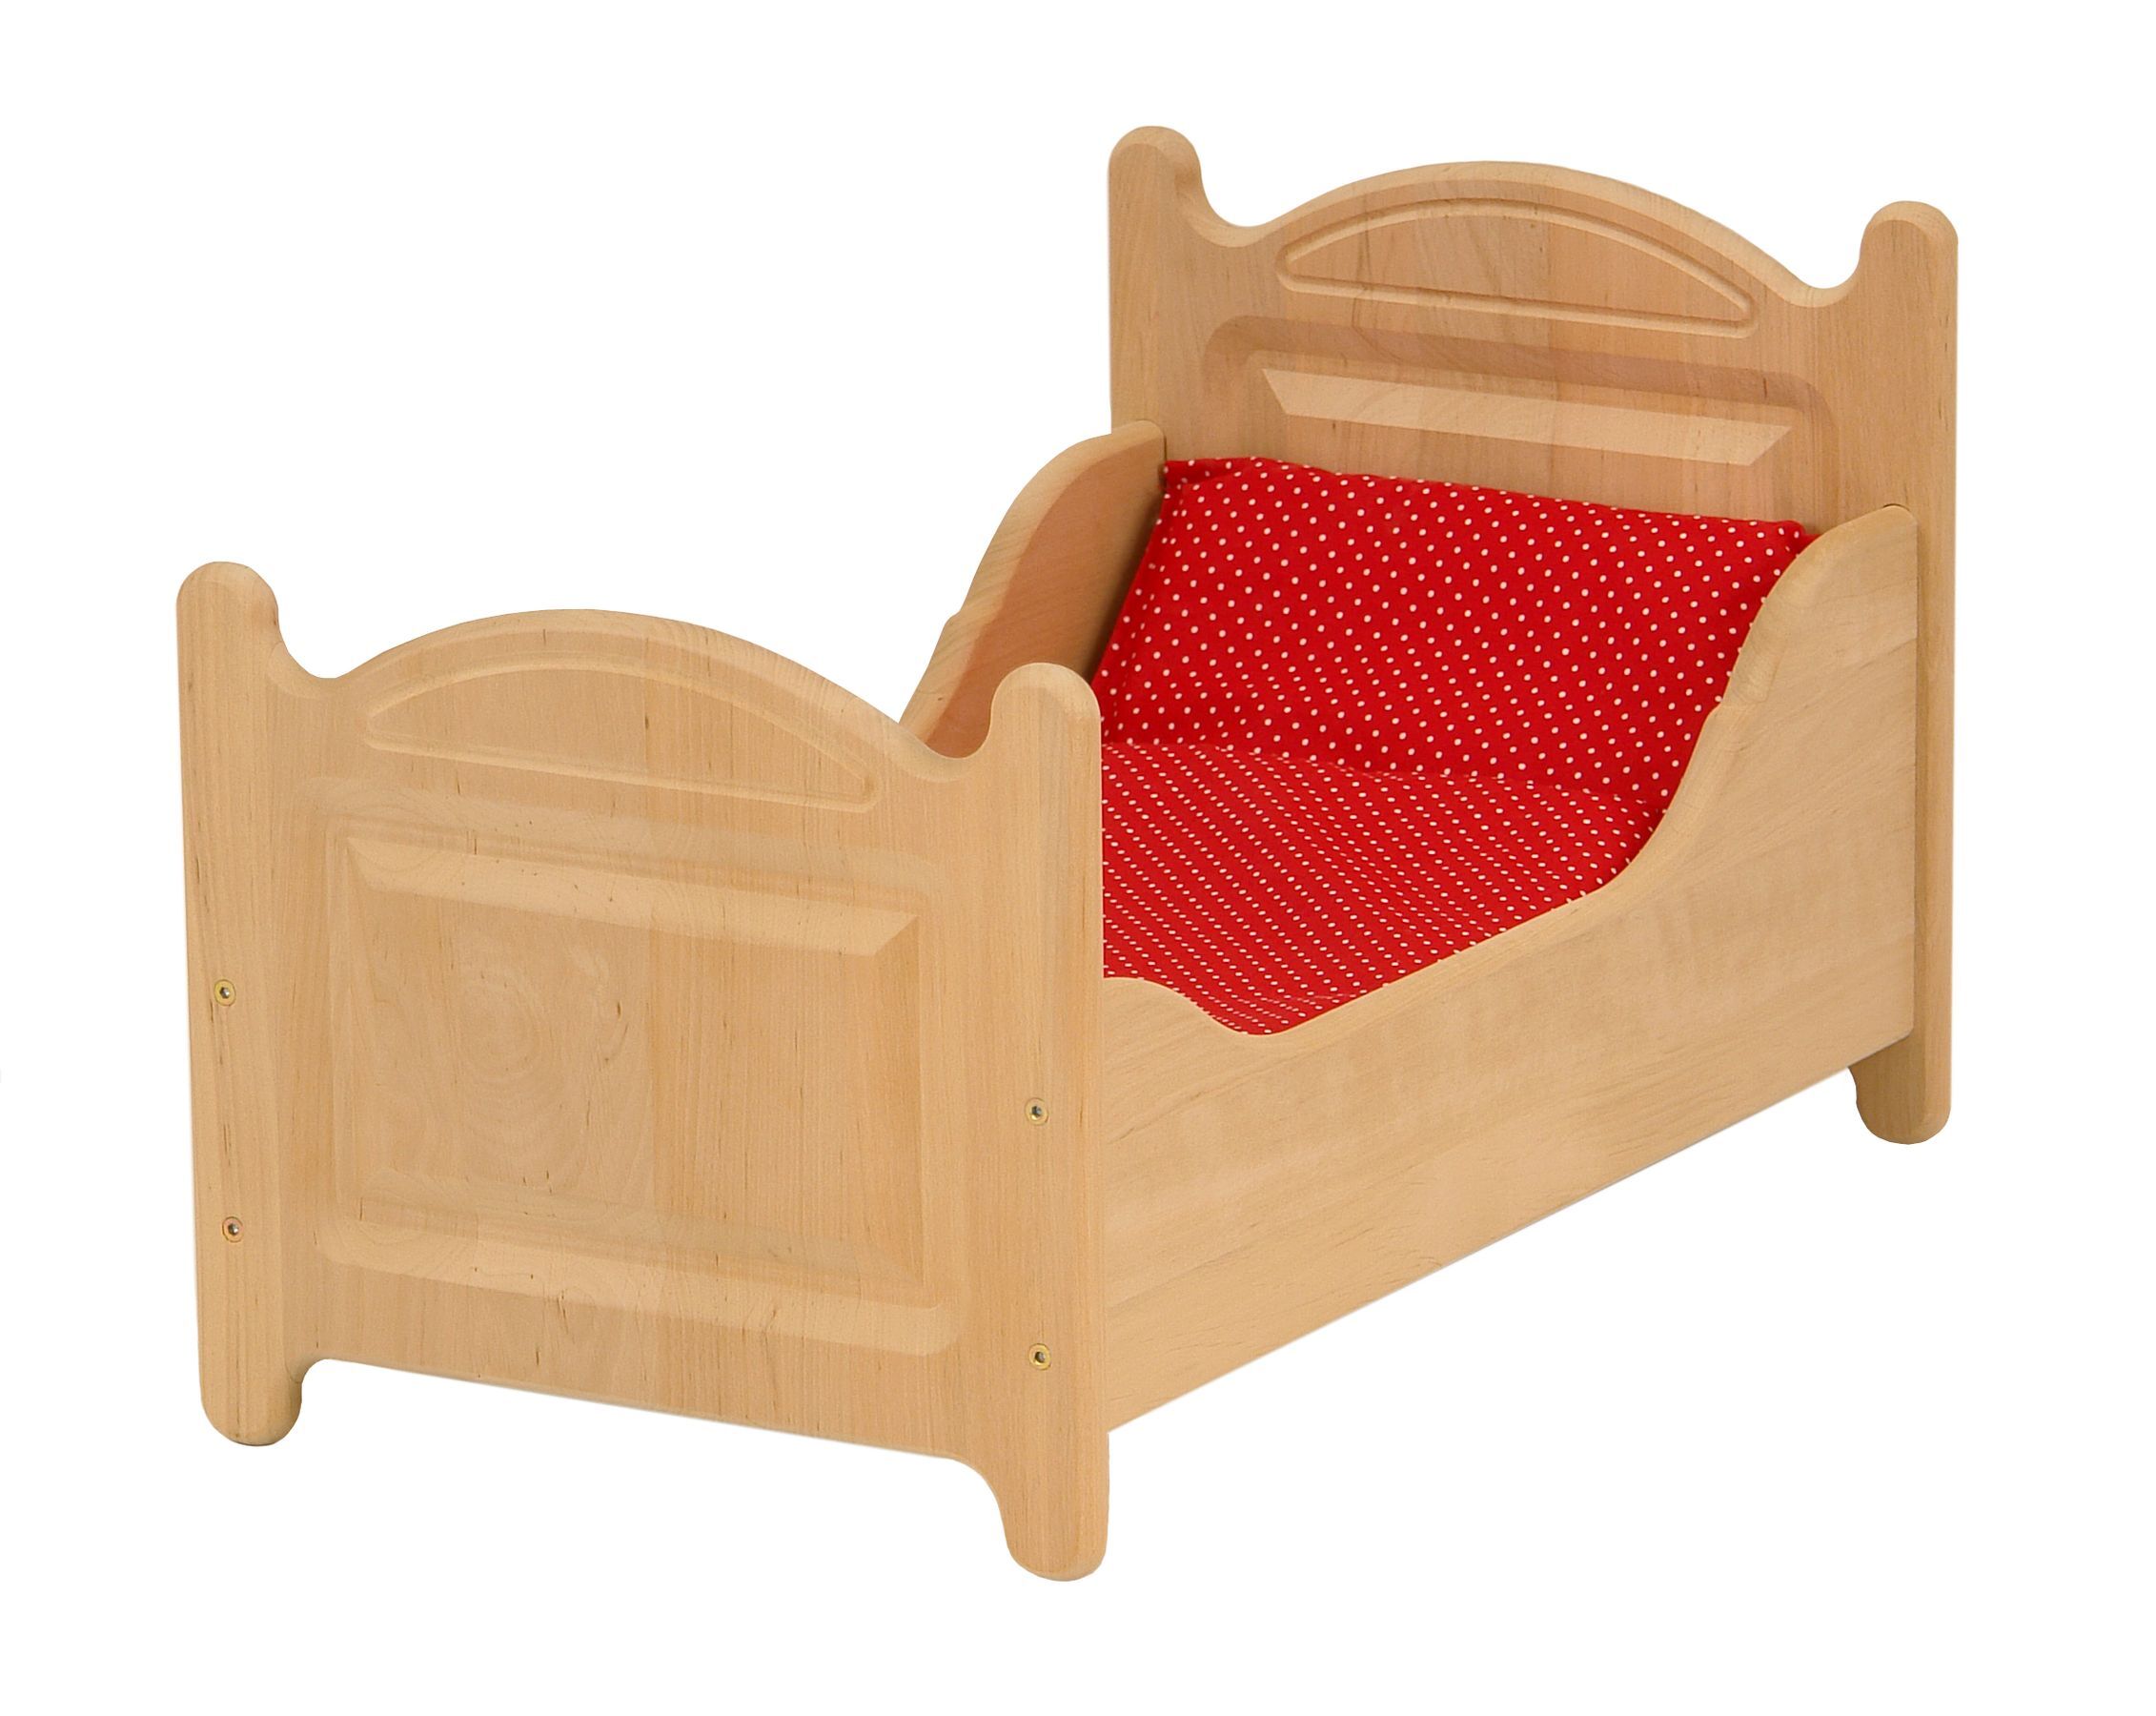 Drewart Puppenbett aus Holz, Holzspielzeug Puppenmöbel 933-3000 